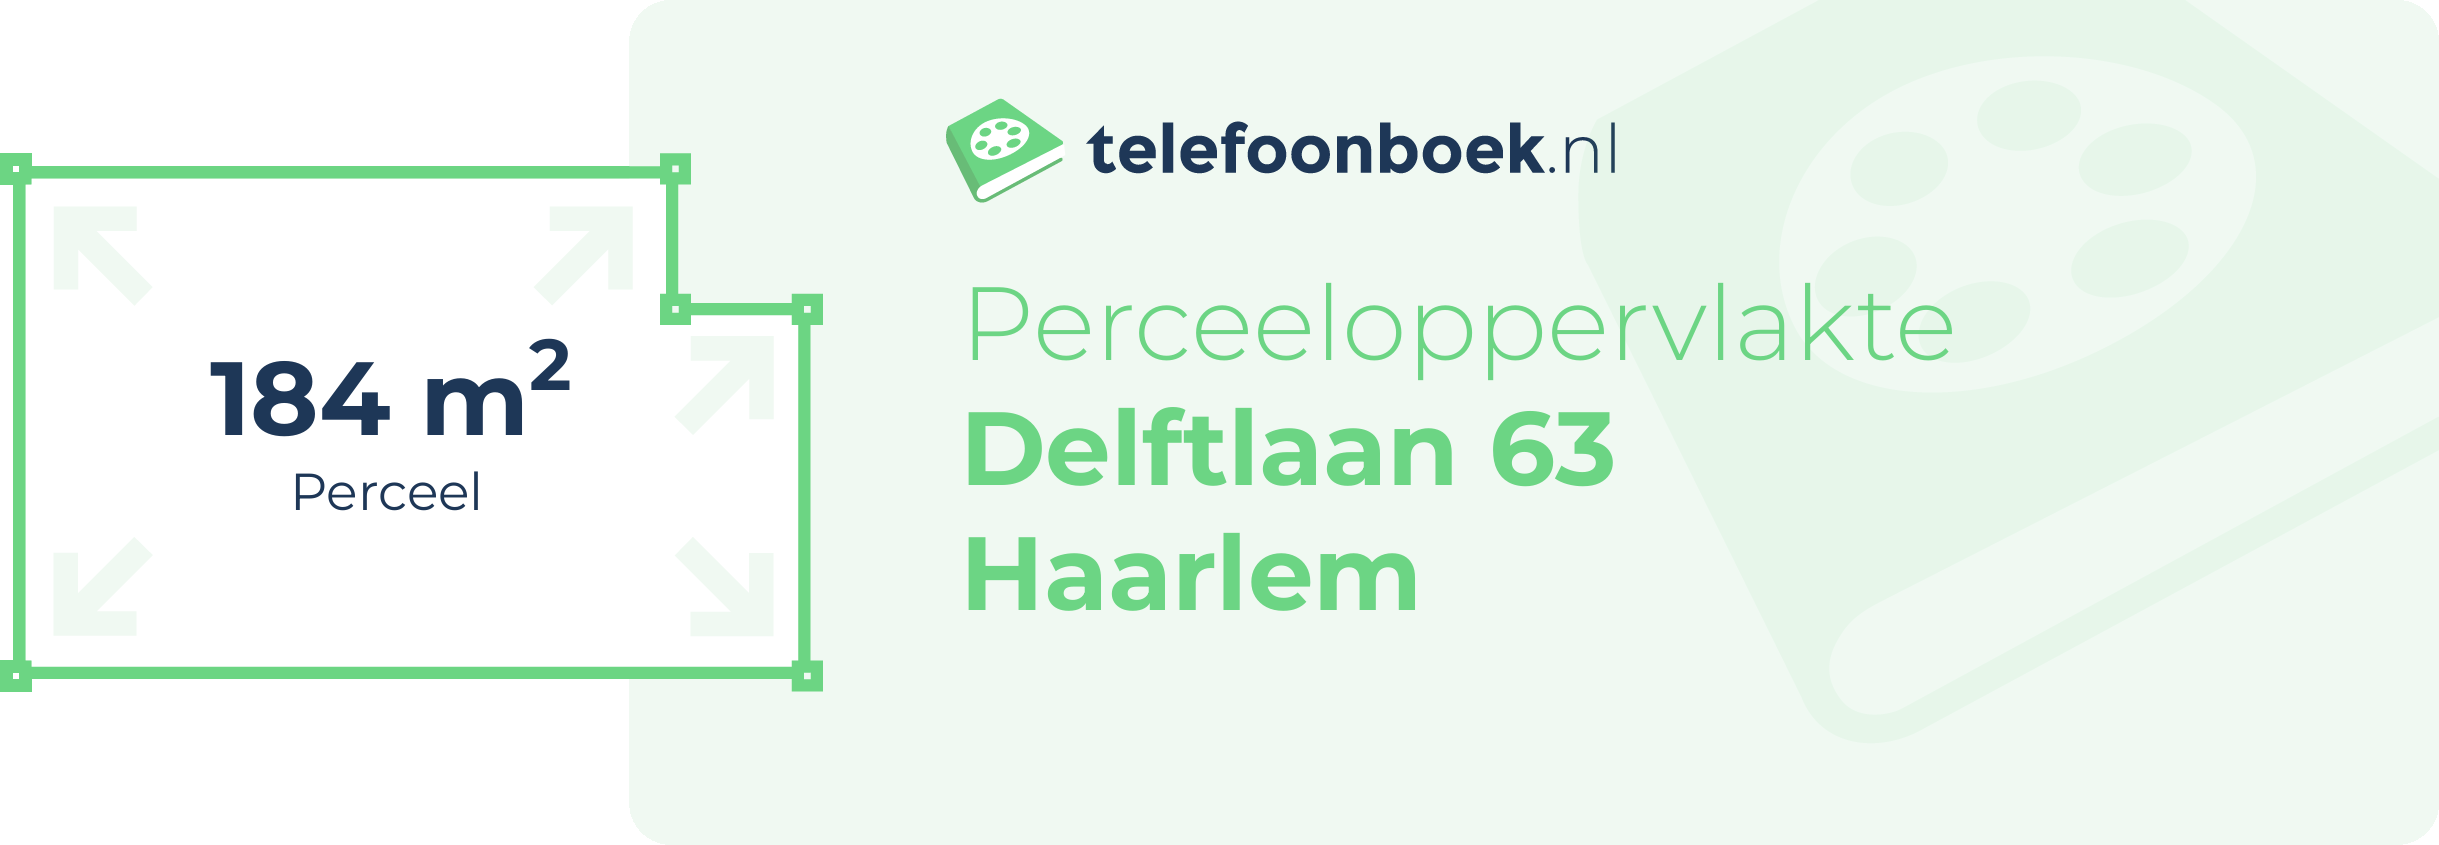 Perceeloppervlakte Delftlaan 63 Haarlem